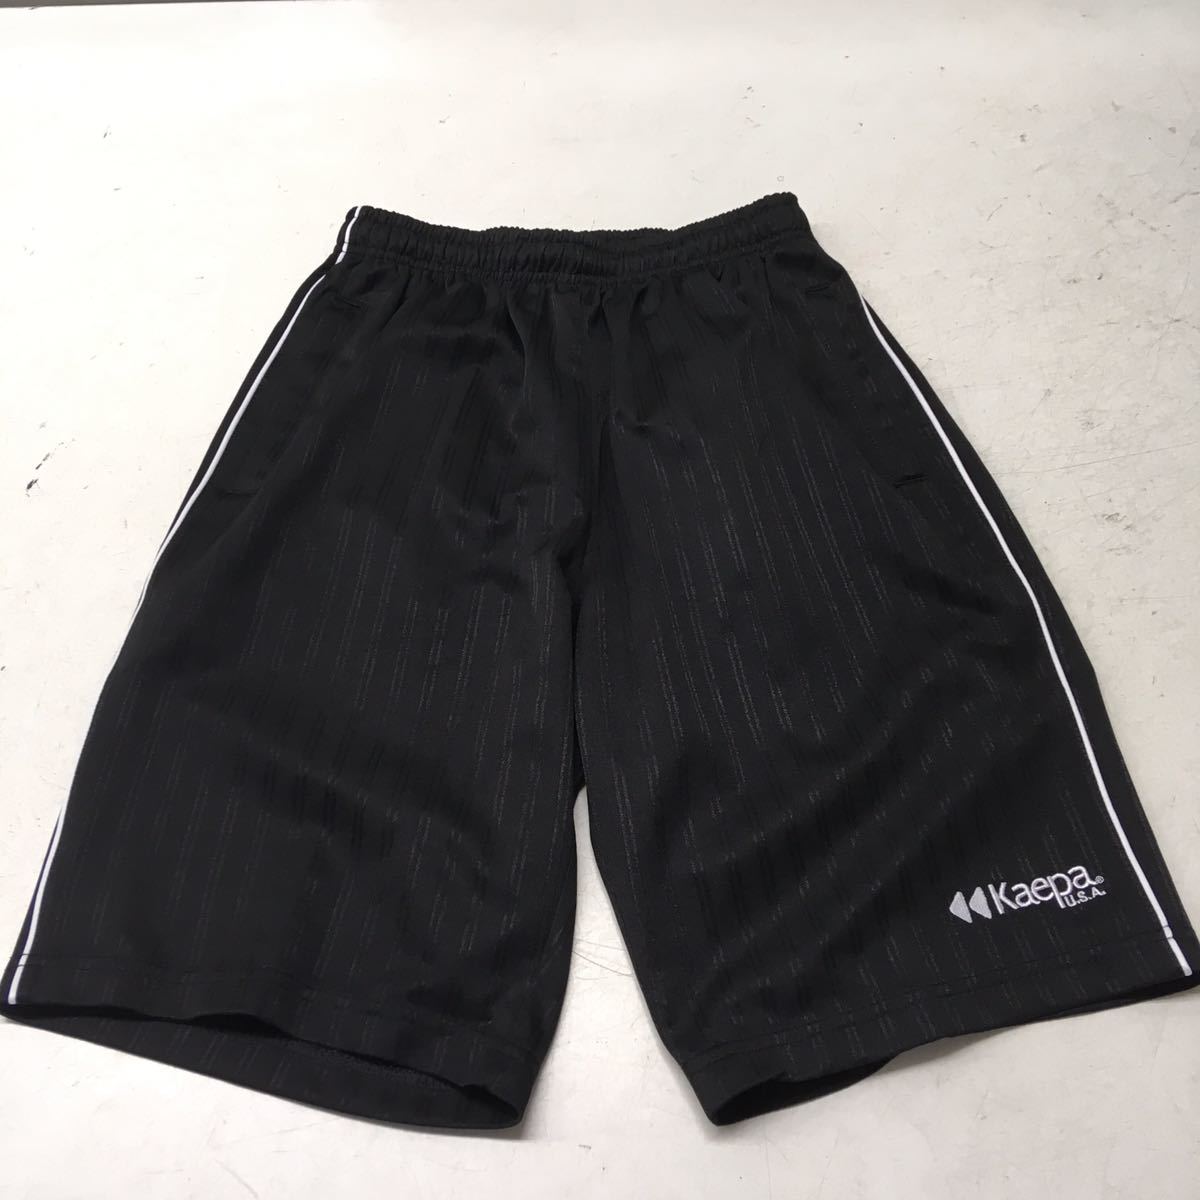  free shipping *kaepa Kei pa* jersey shorts *M size * black #50331sae